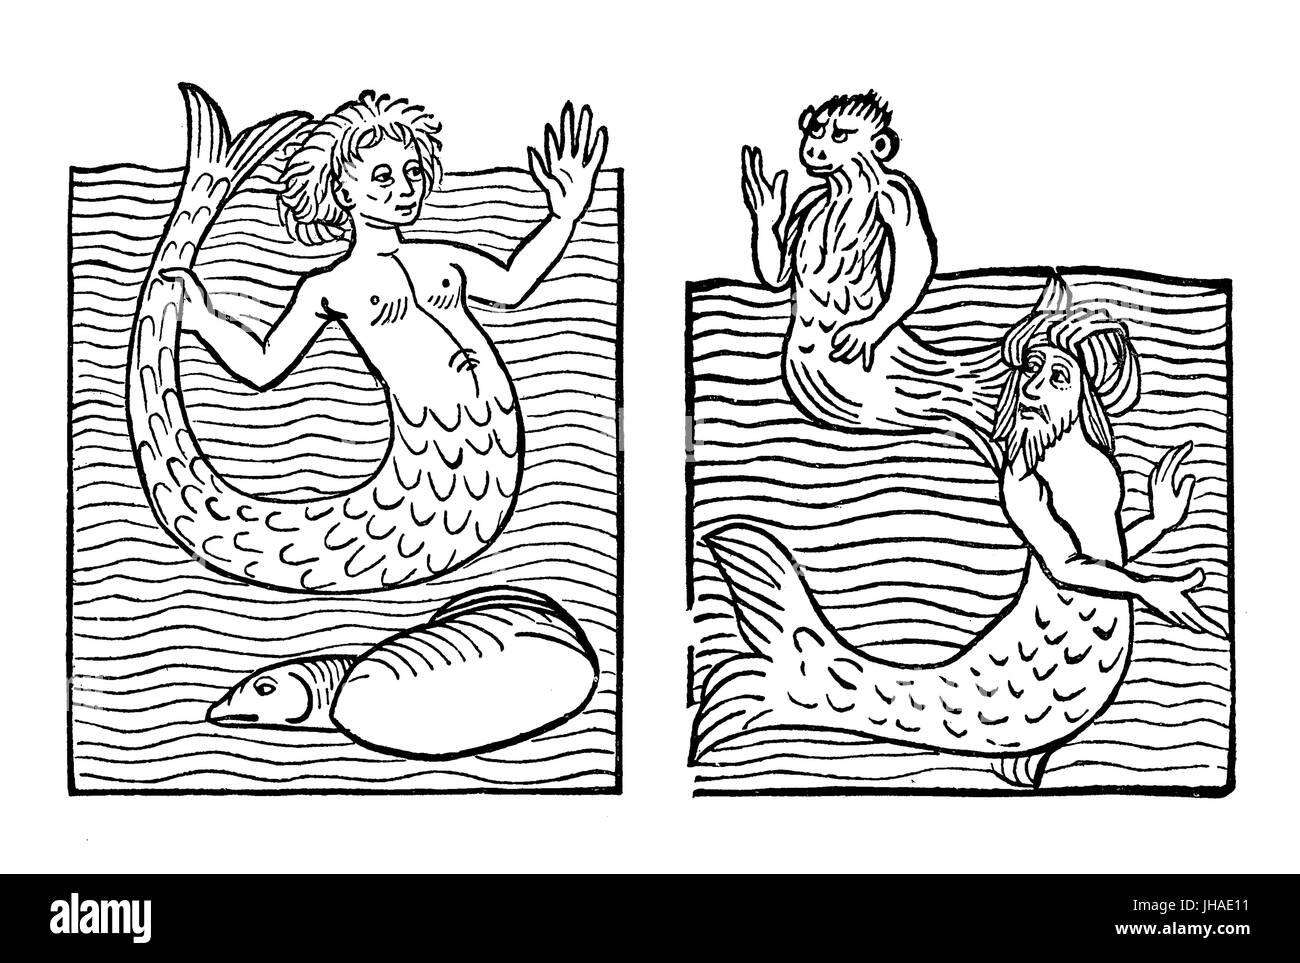 Y el monstruo marino humal-como criatura: Mermaid, mar, mar de mono Turk, grabado medieval, año 1491 Foto de stock